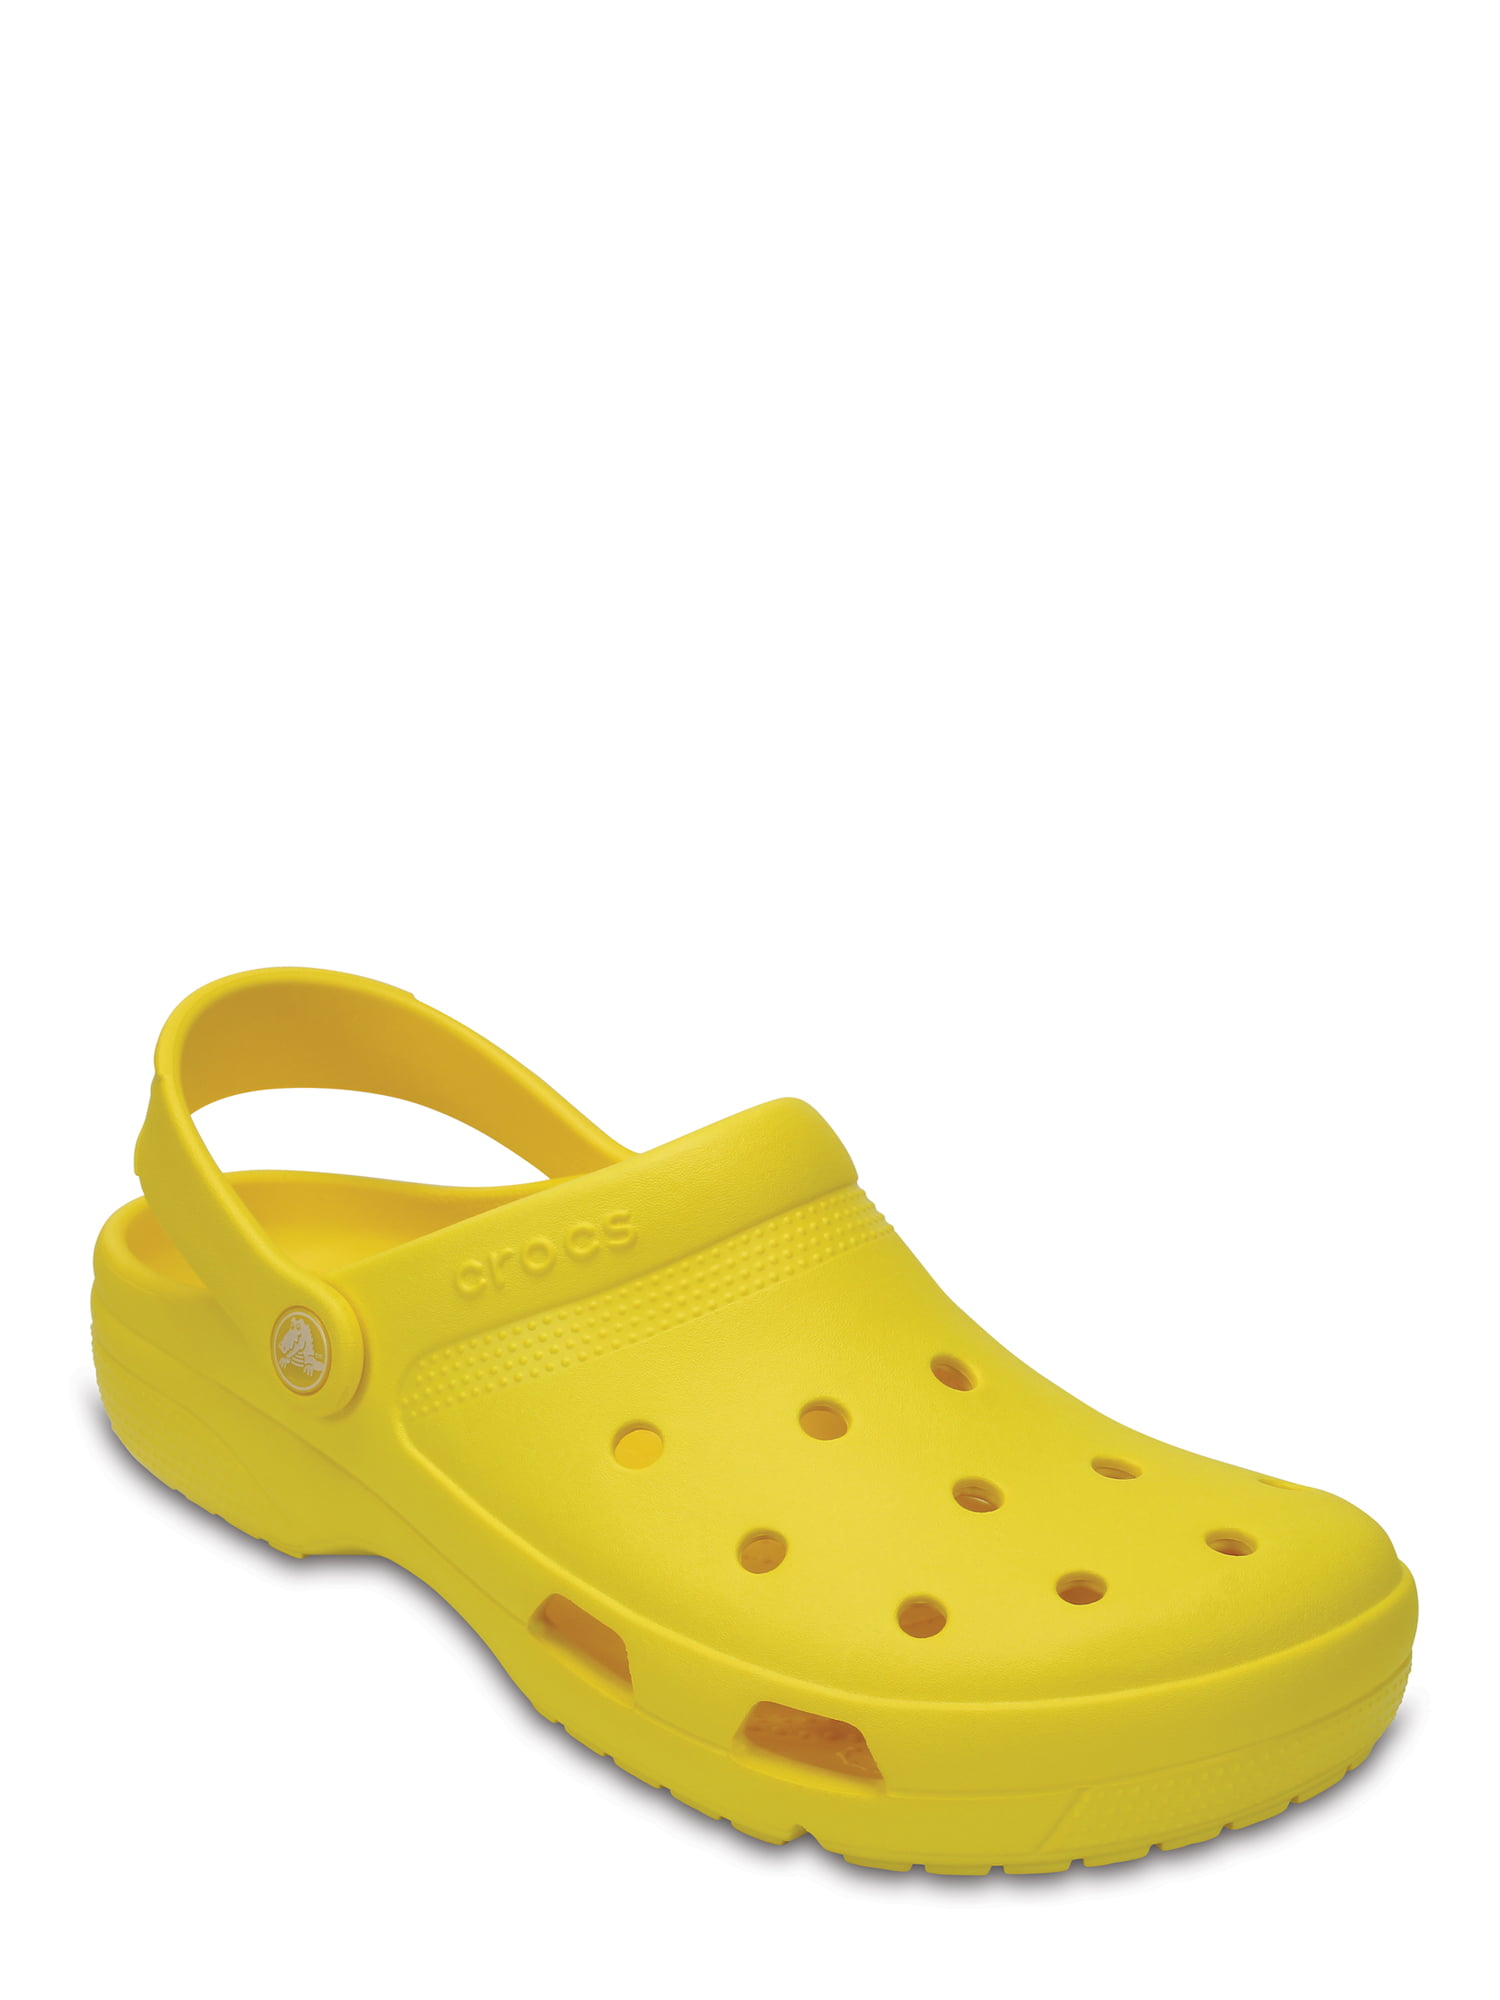 crocs for men walmart